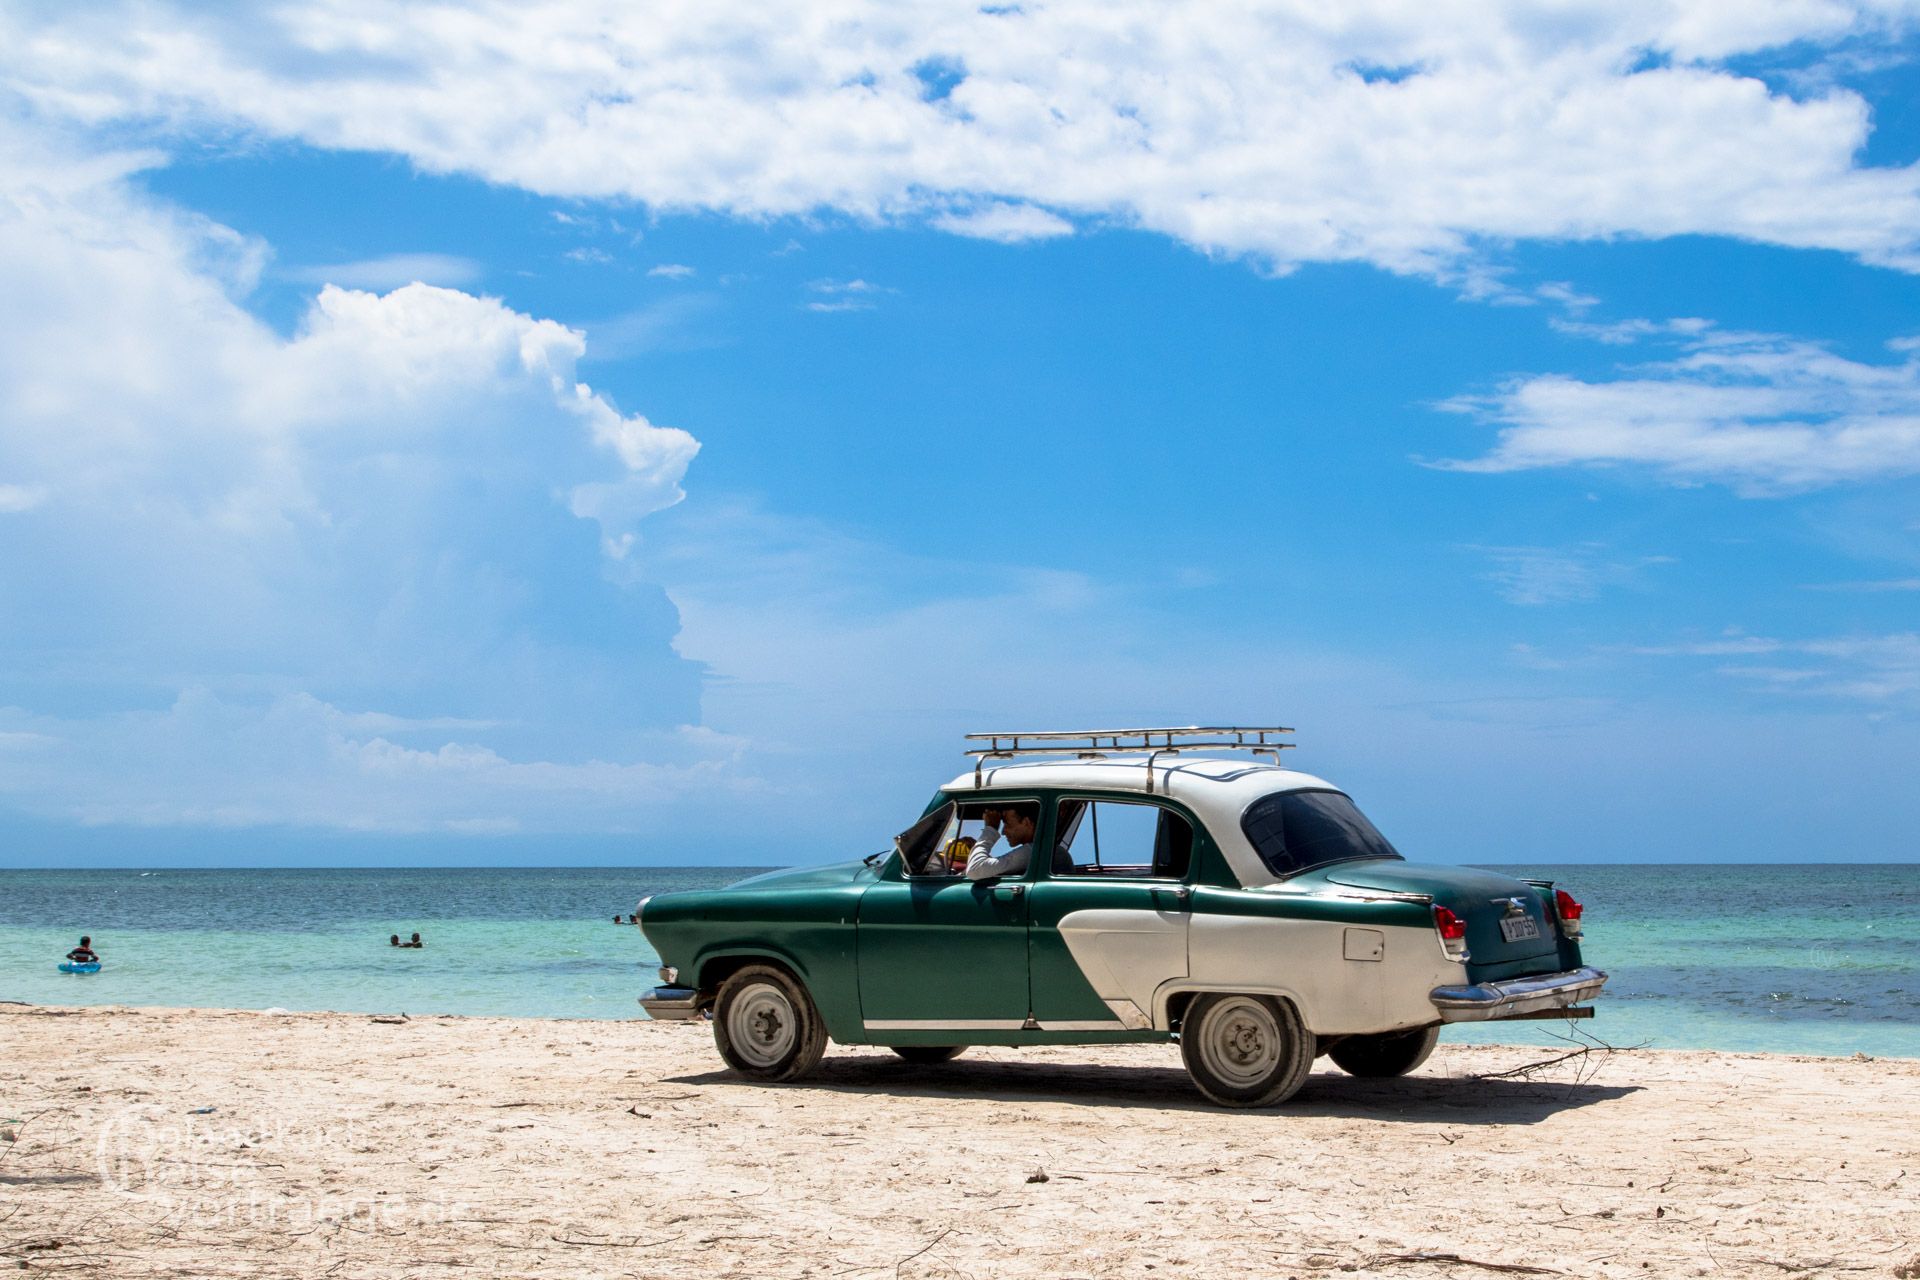 Cuba, Cajo Jutias, Oldtimer taxi on the beach